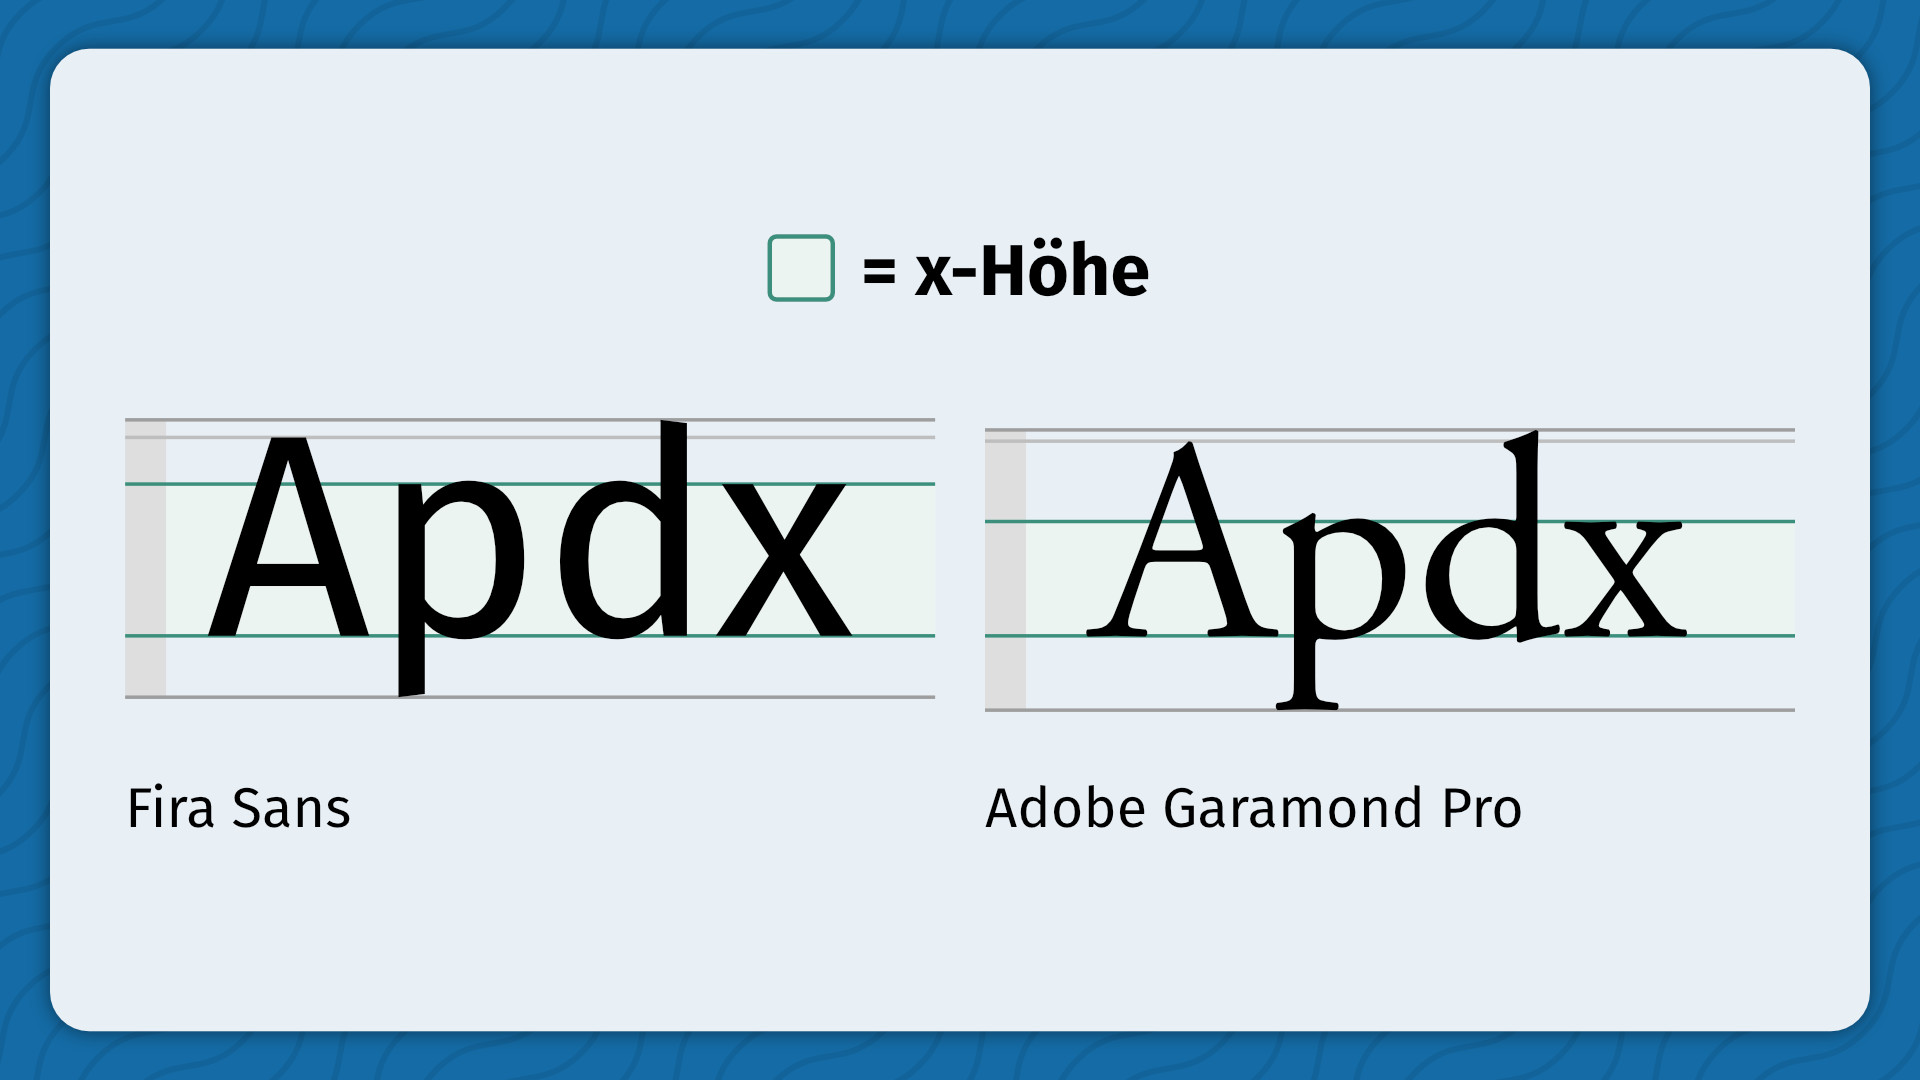 Infografik, die die x-Höhen von 'Fira Sans' und 'Adobe Garamond Pro' vergleicht, wobei 'Fira Sans' eine höhere x-Höhe aufweist.